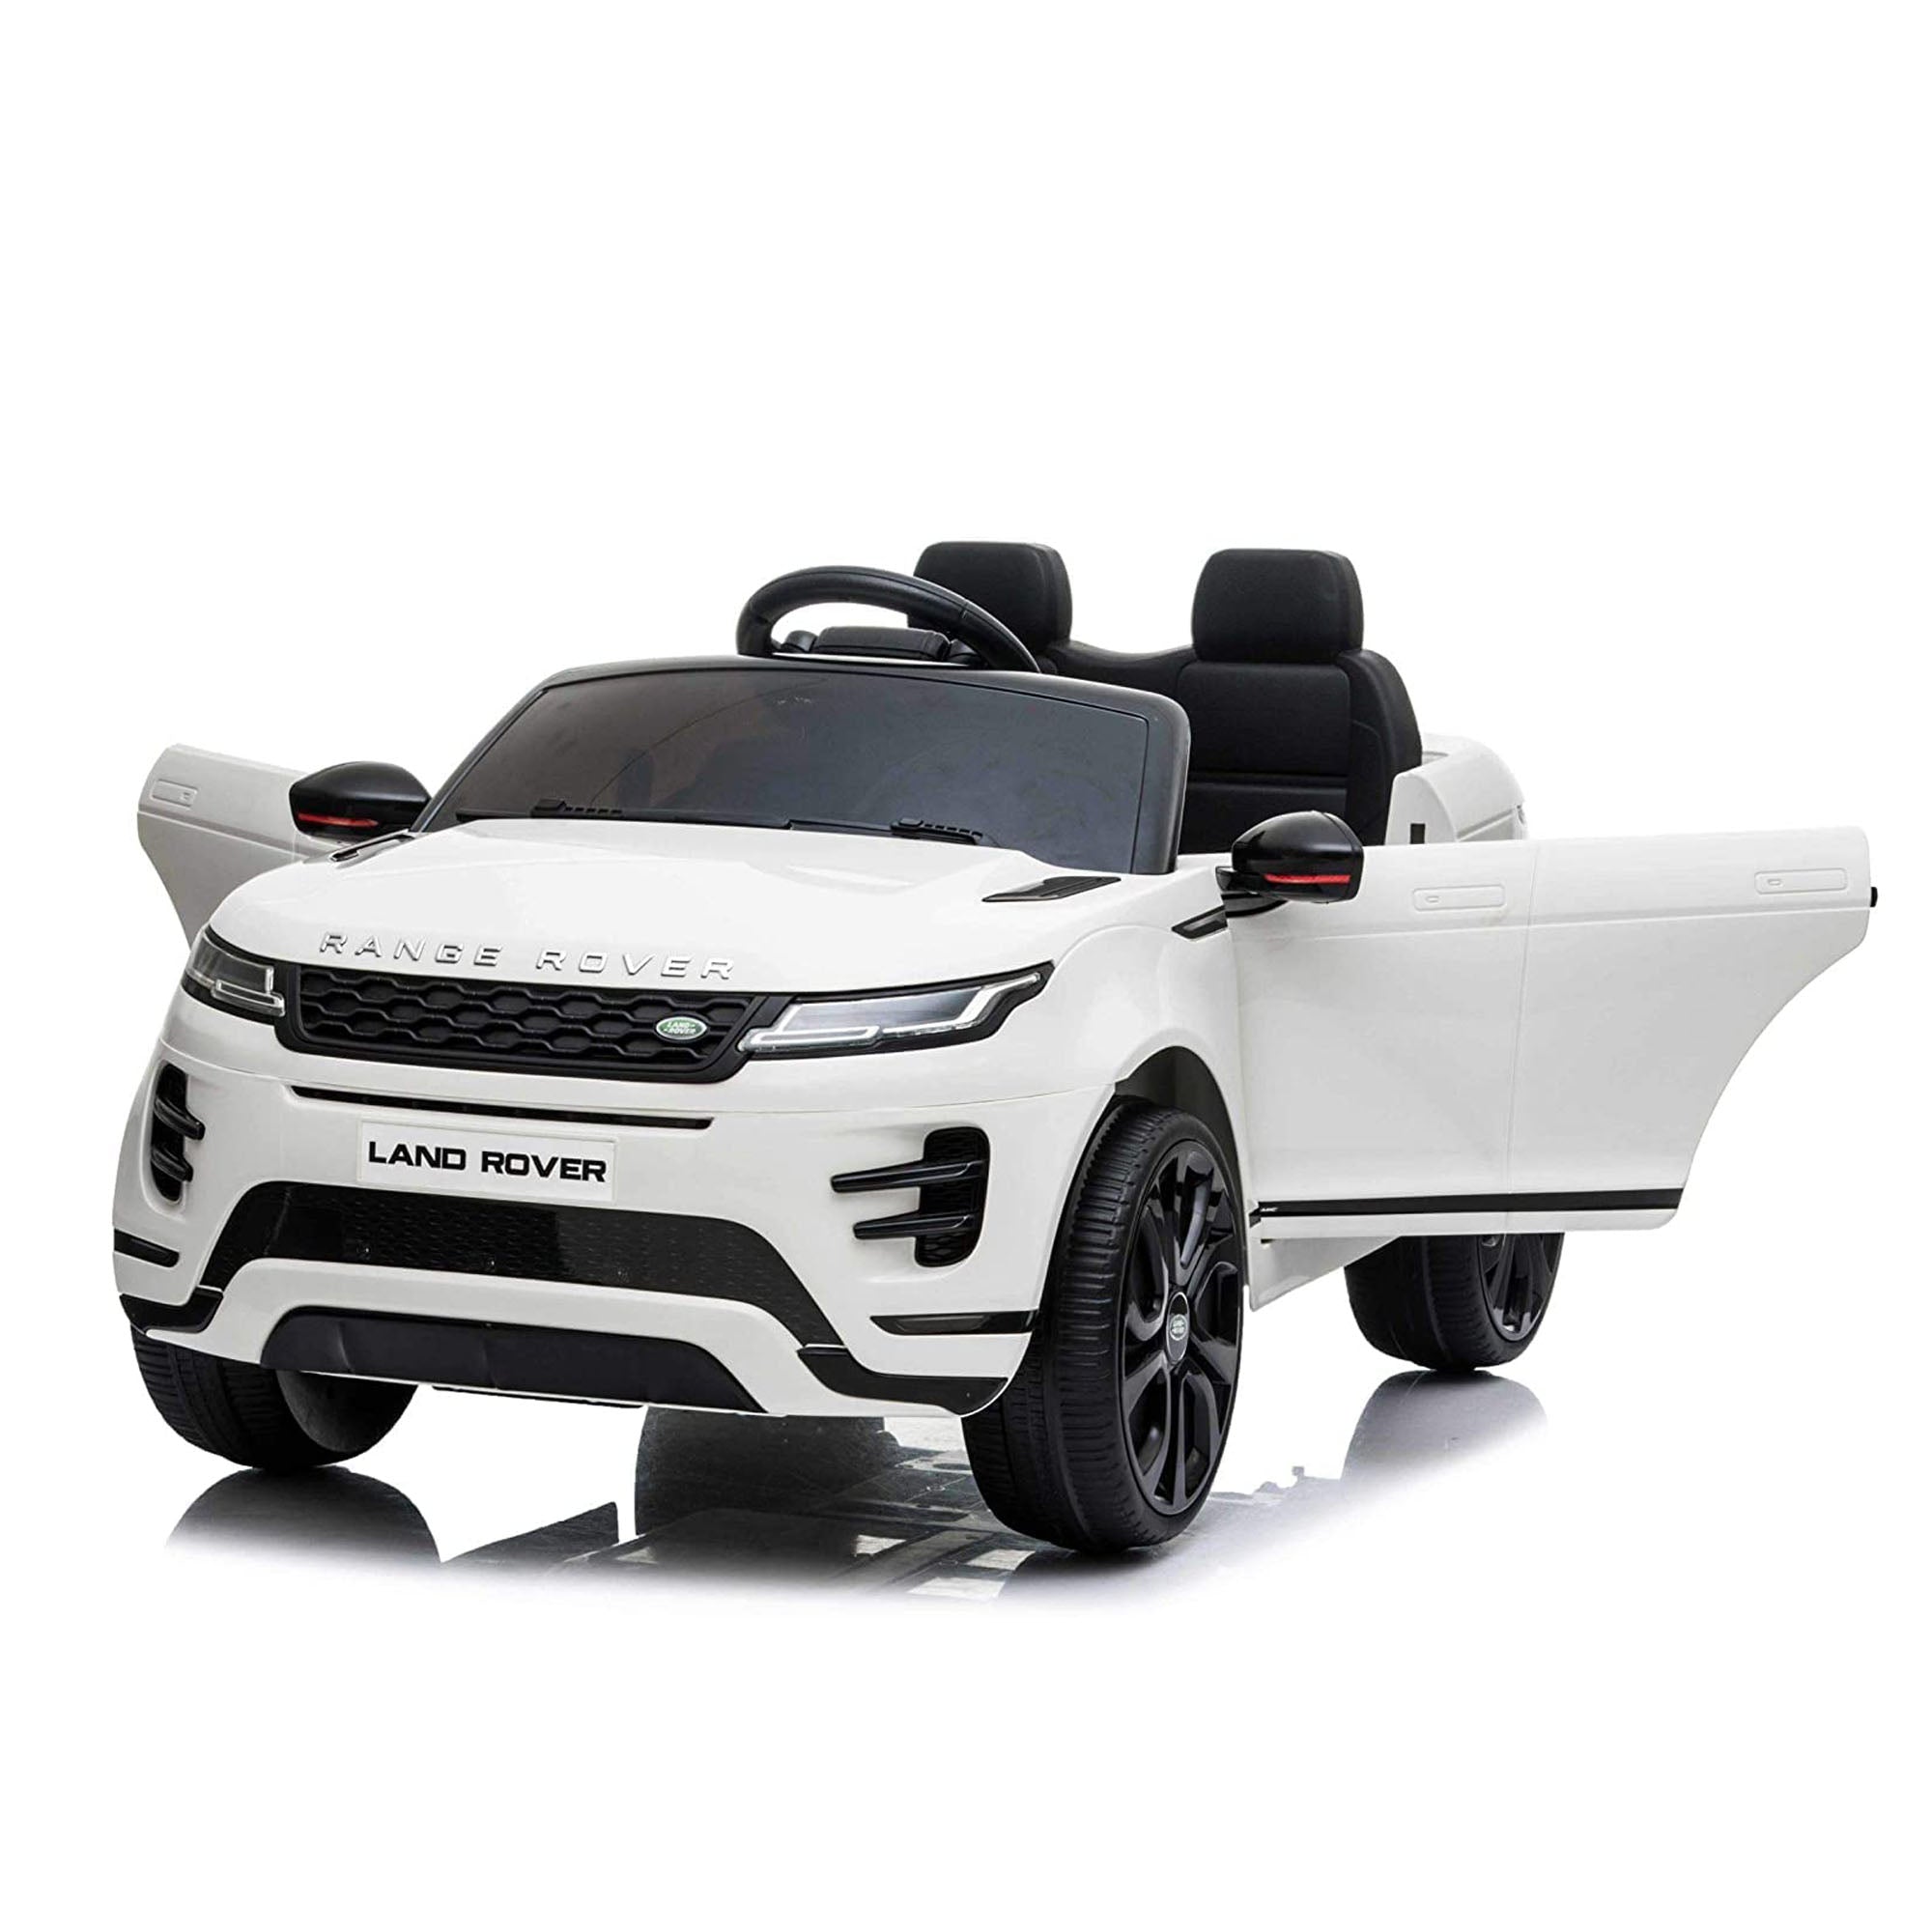 Kids Ride On Cars Range Rover Evoque - DerakBikes